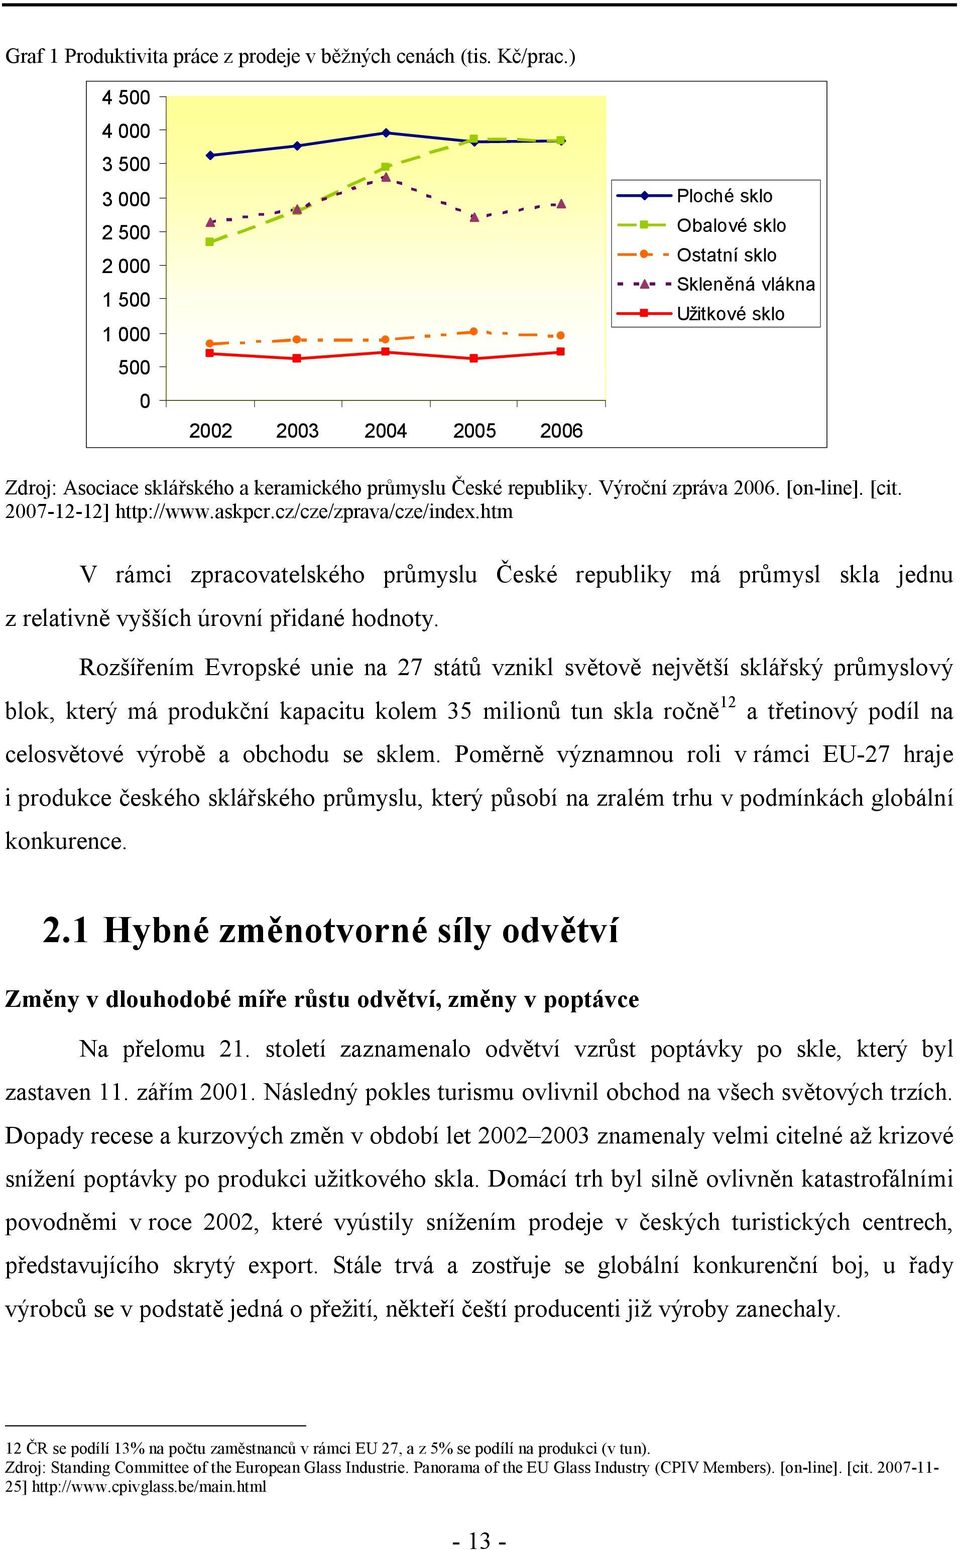 České republiky. Výroční zpráva 2006. [on-line]. [cit. 2007-12-12] http://www.askpcr.cz/cze/zprava/cze/index.